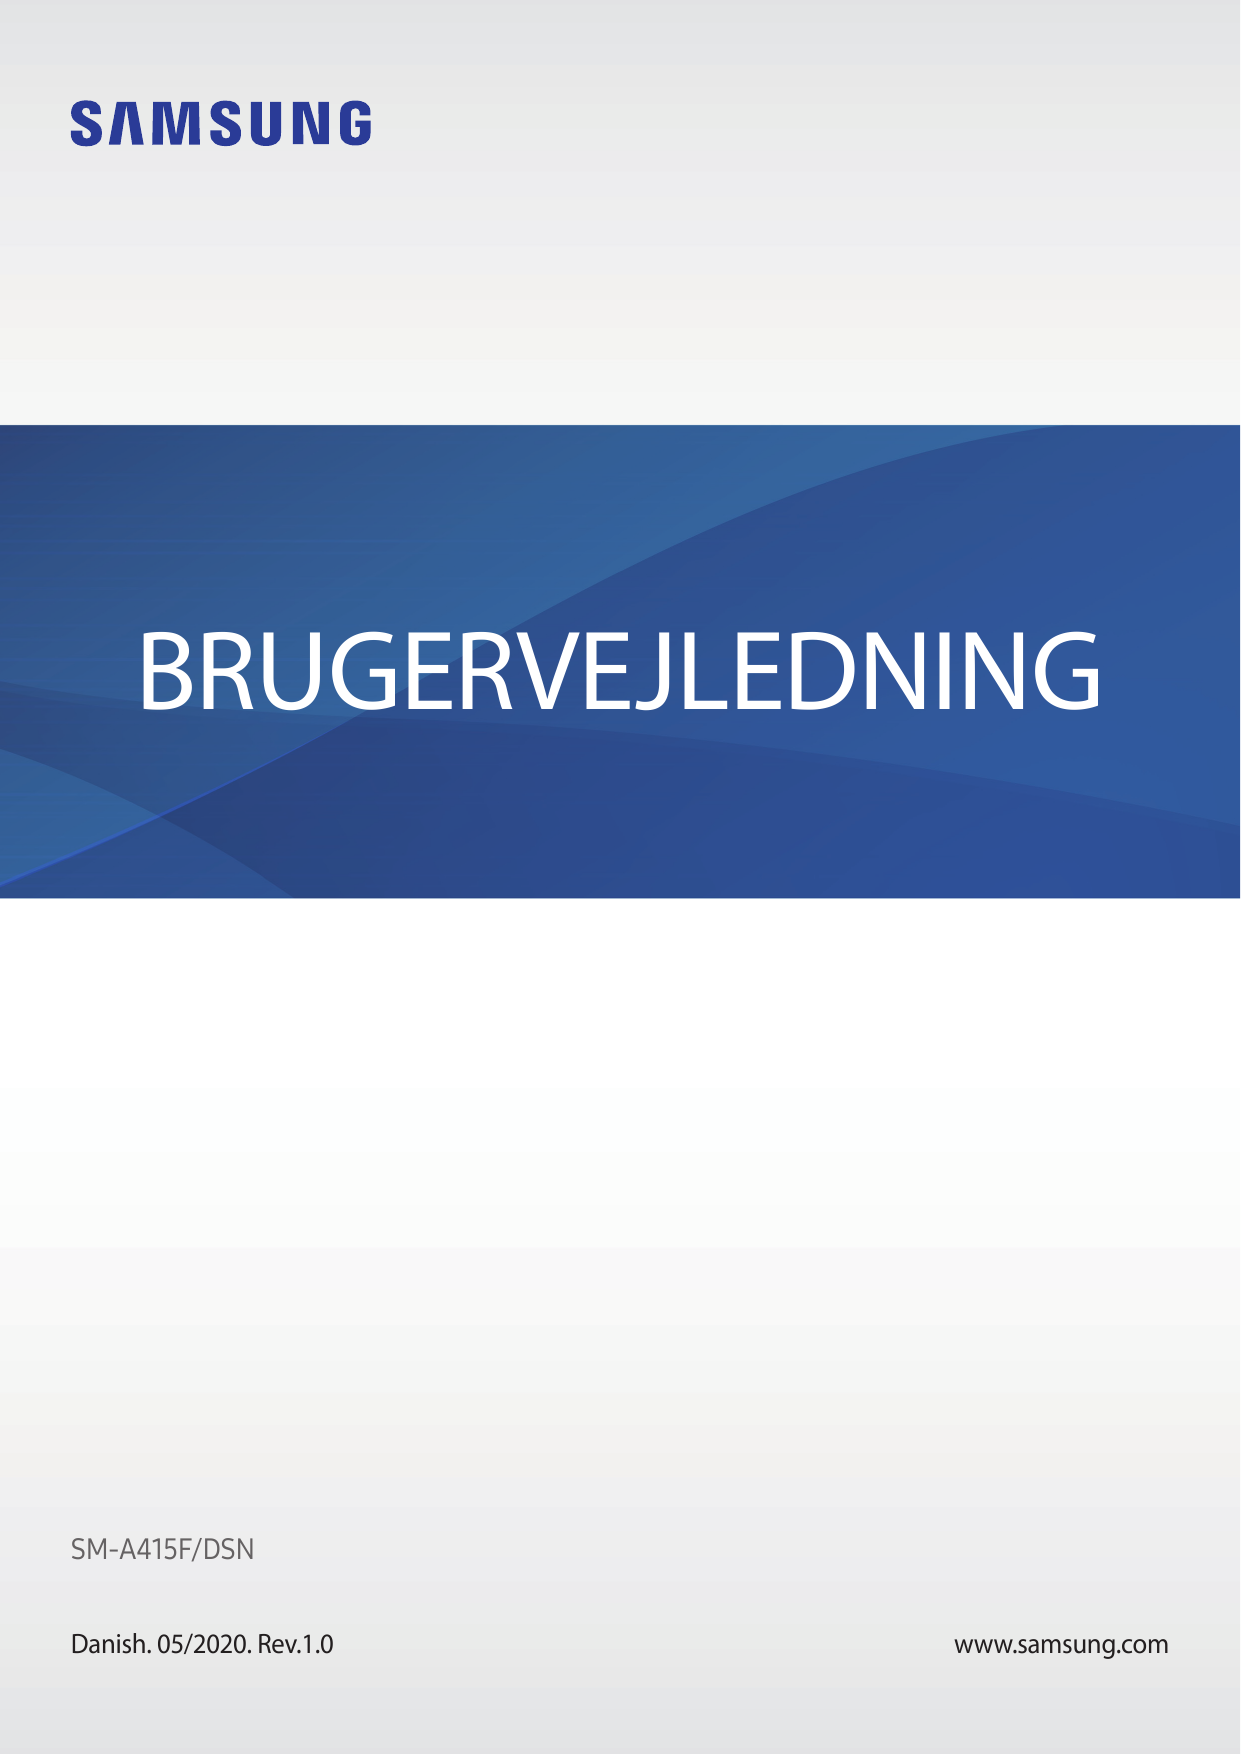 BRUGERVEJLEDNINGSM-A415F/DSNDanish. 05/2020. Rev.1.0www.samsung.com